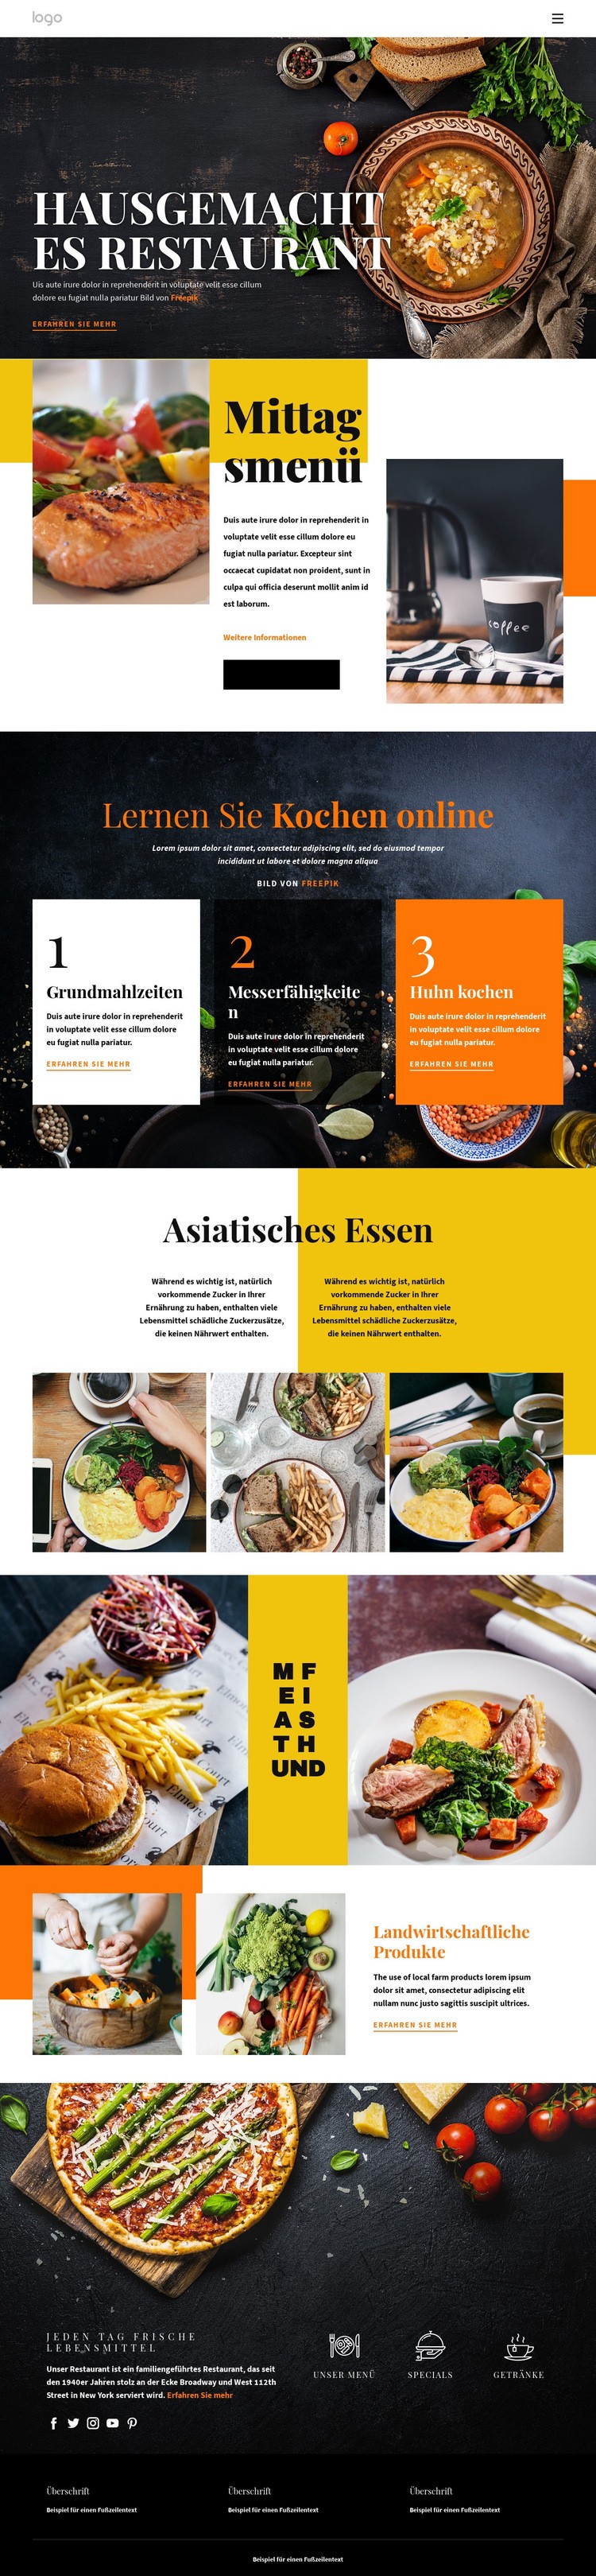 Besser als zu Hause essen Website design